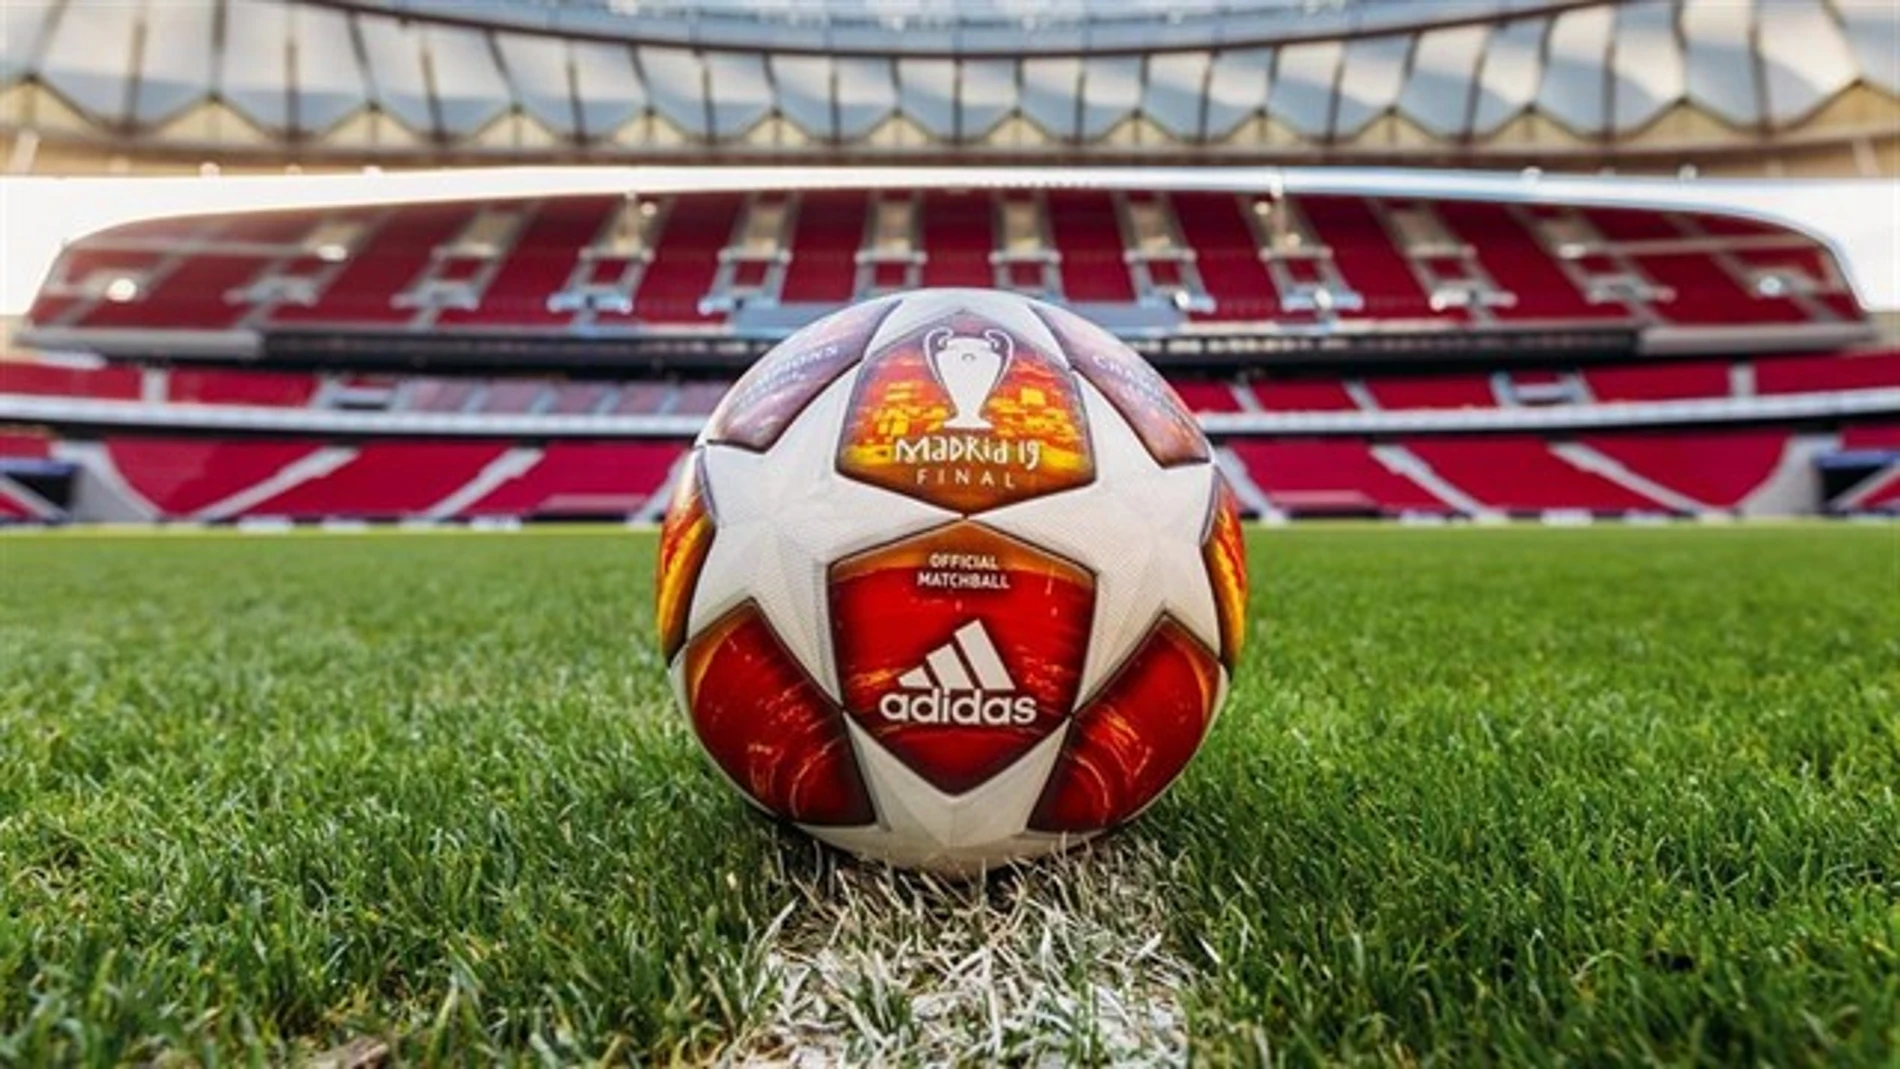 Adidas ha presentado hoy el balón de la Final que se jugará en el Wanda Metropolitano